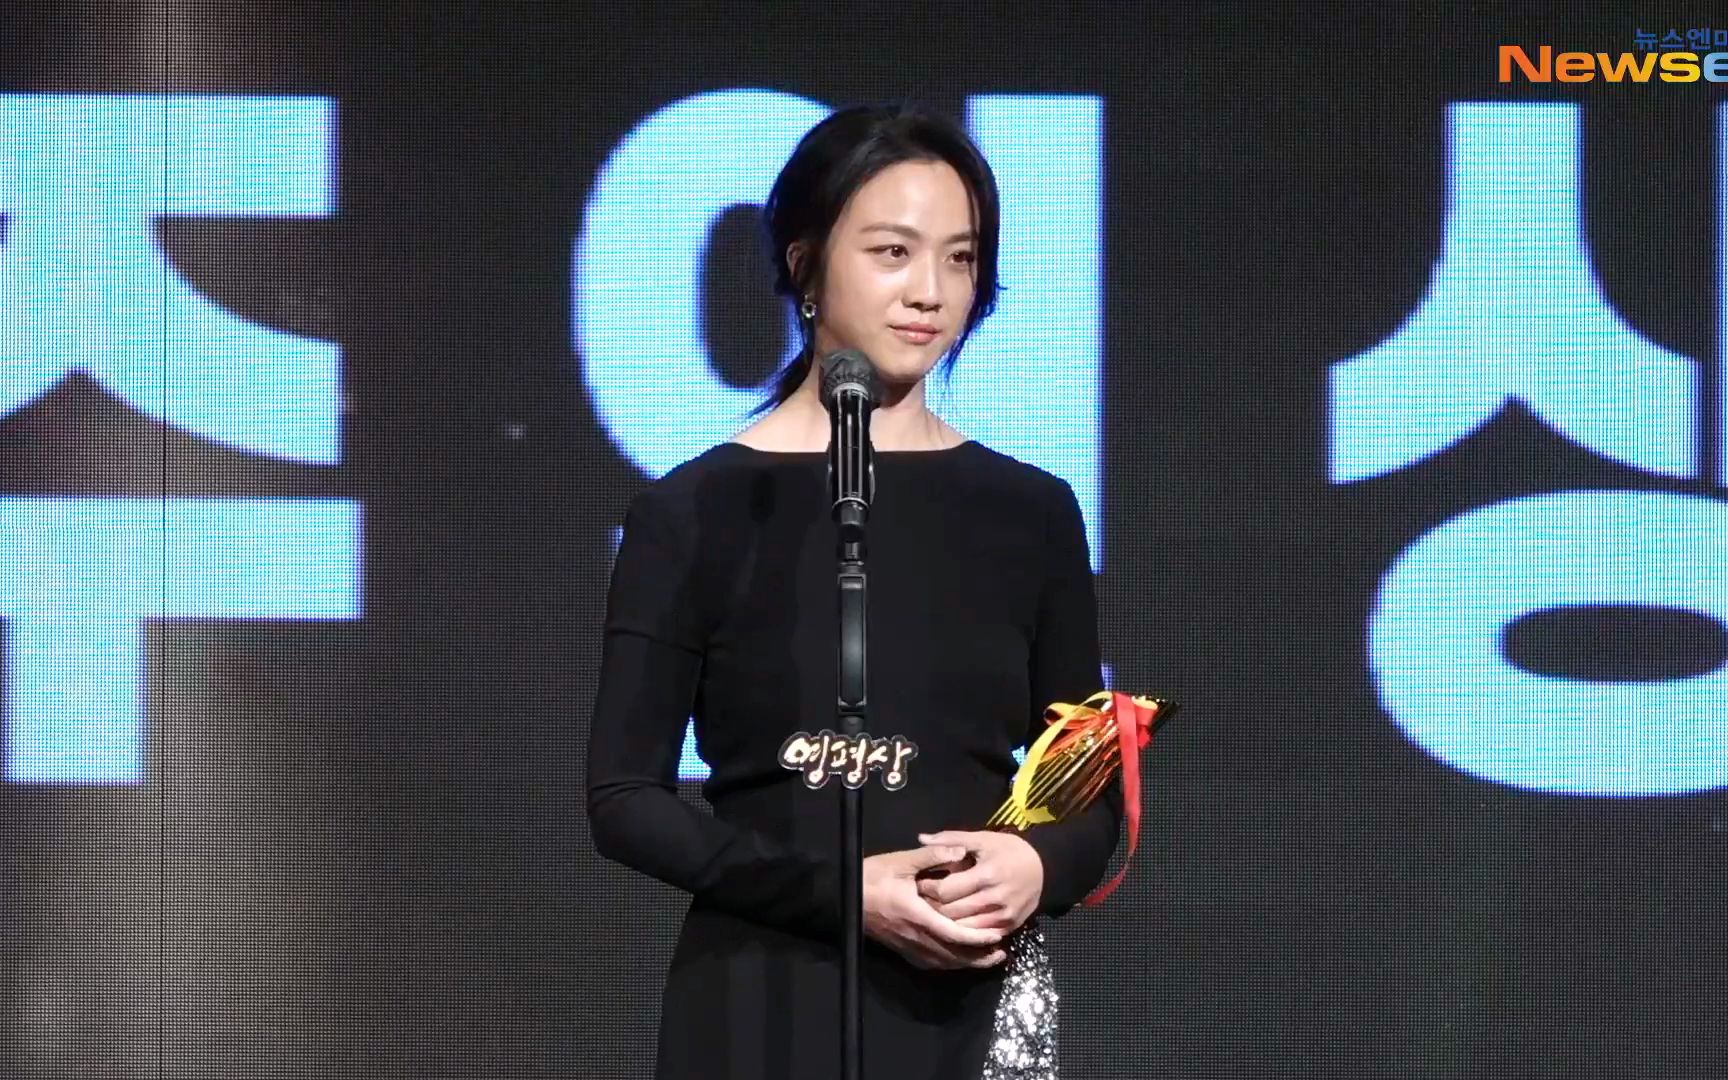 汤唯 - 第42届韩国影评奖最佳女主角 - 「分手的决心」